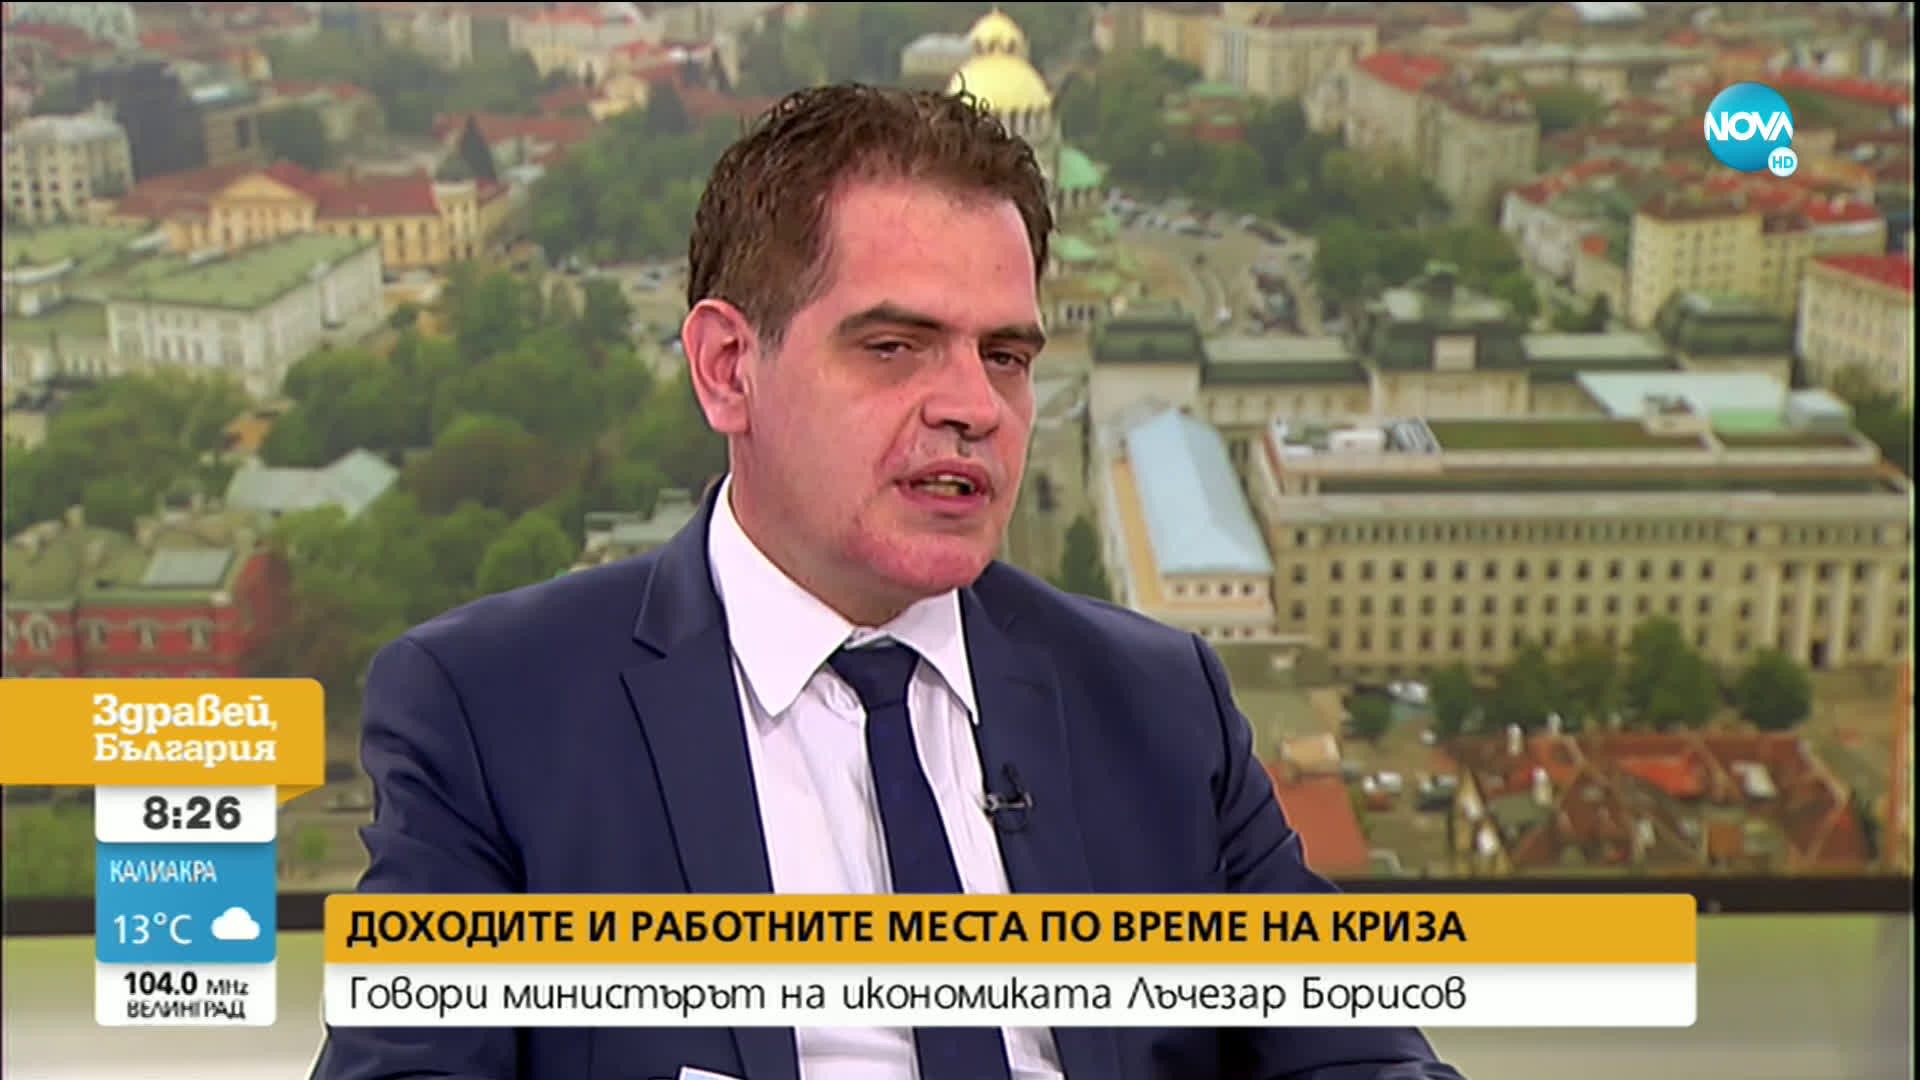 Министър Борисов: От противоепидемичните мерки във второто тримесечие на годината загубихме 8.5% от БВП